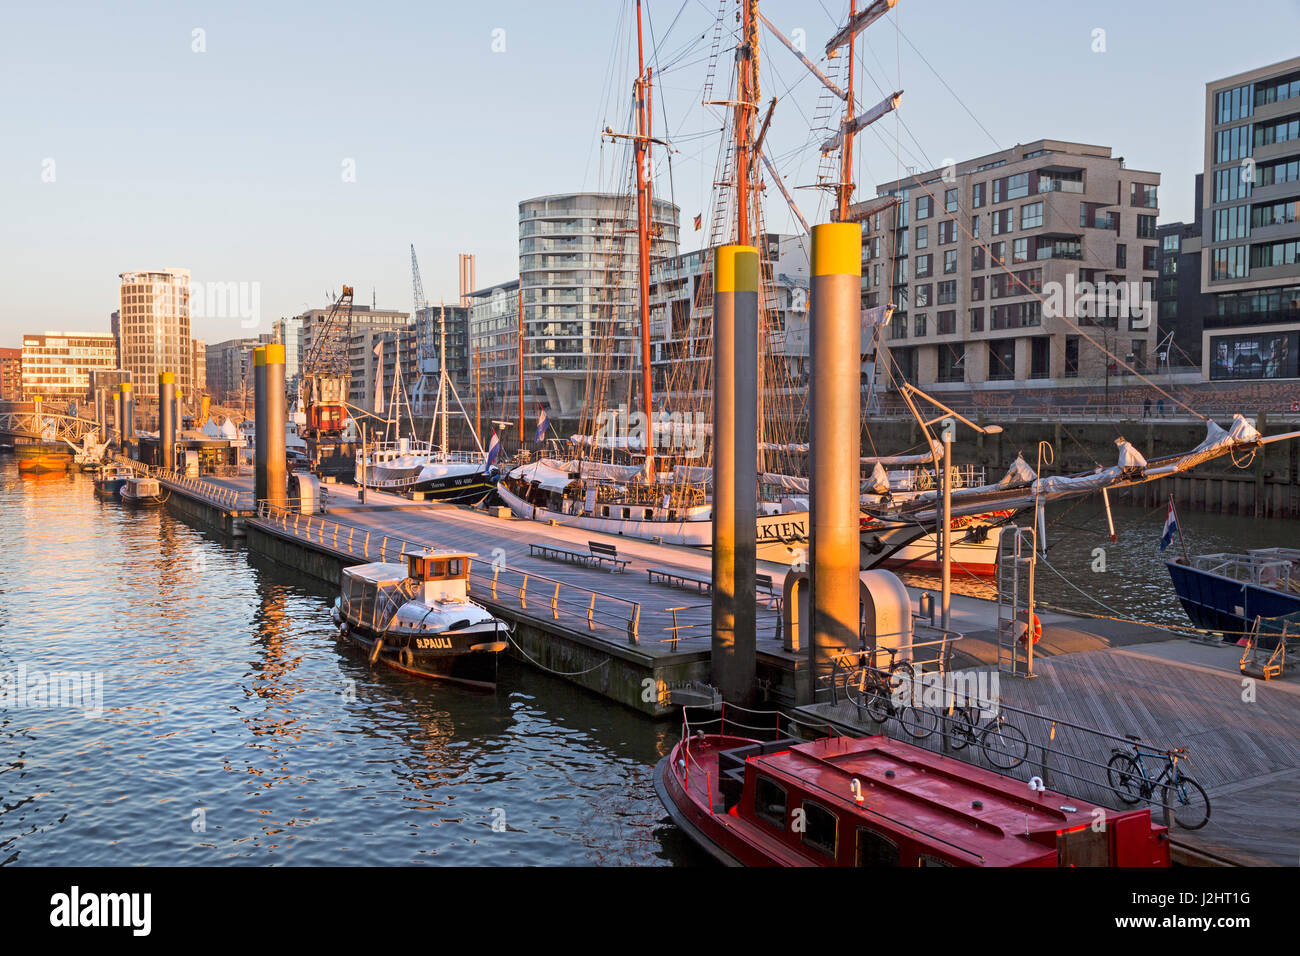 Traditionelle Hafen am sandtor sandtor Wharf, Hafen, Hafencity, Hamburg, Deutschland Stockfoto